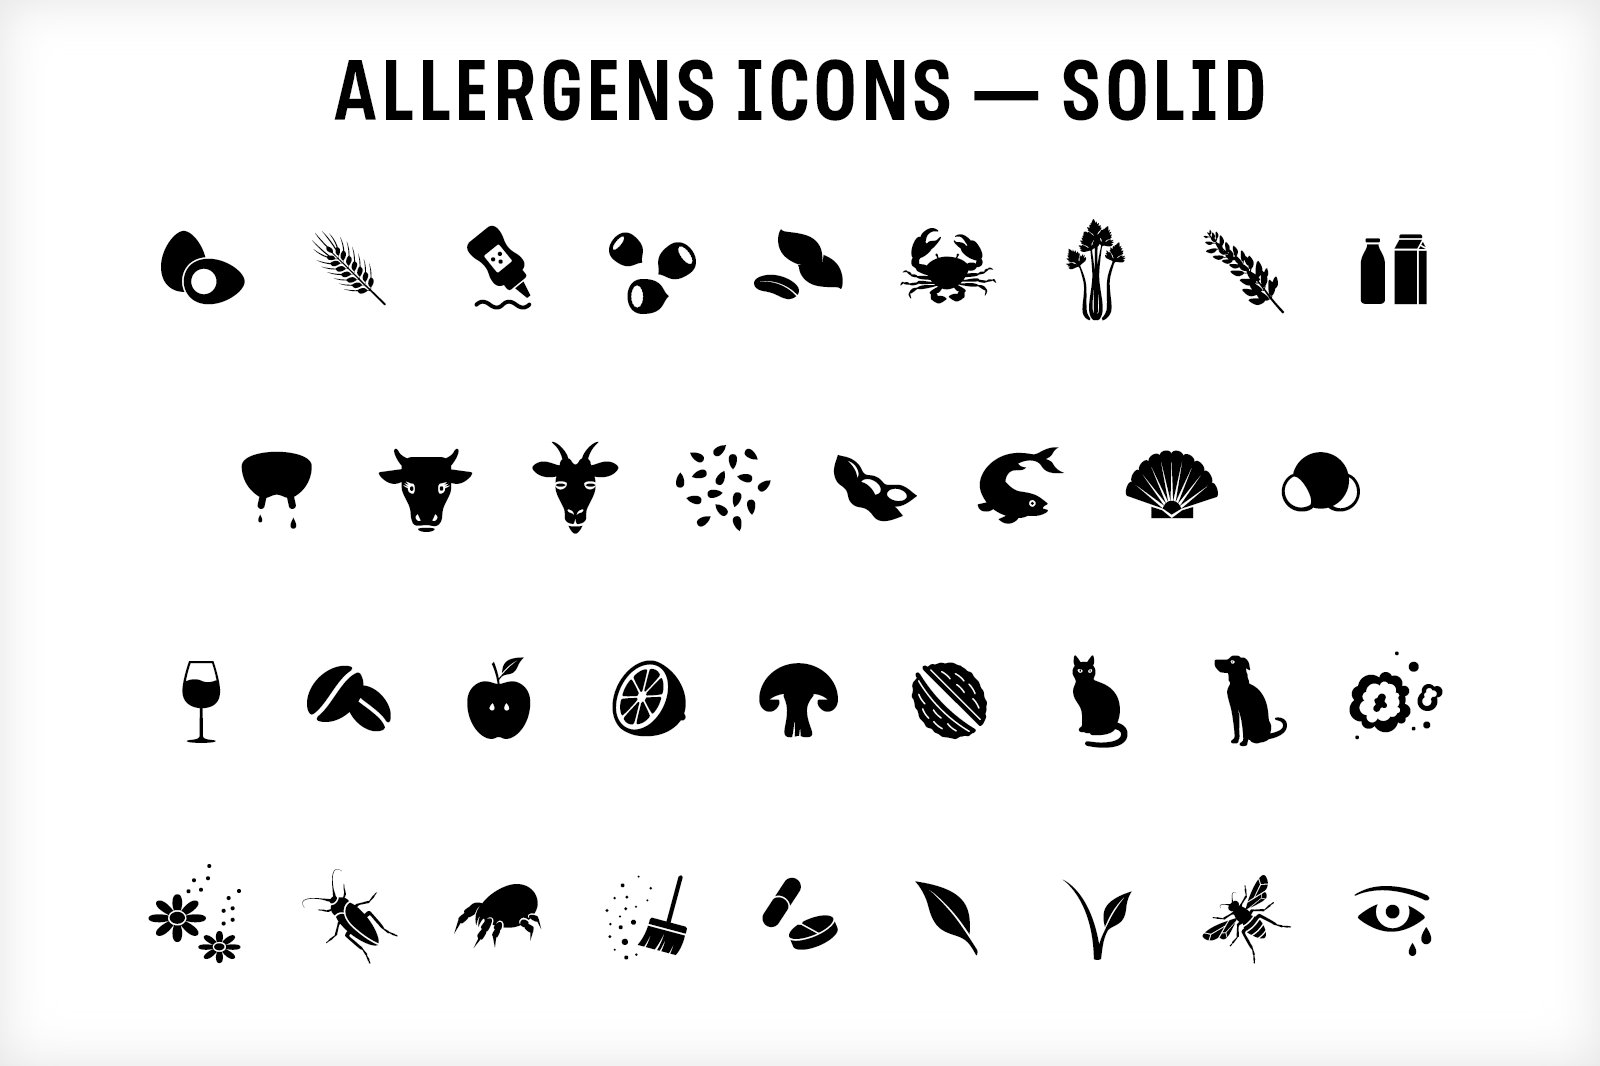 allergen icons cm 4 214